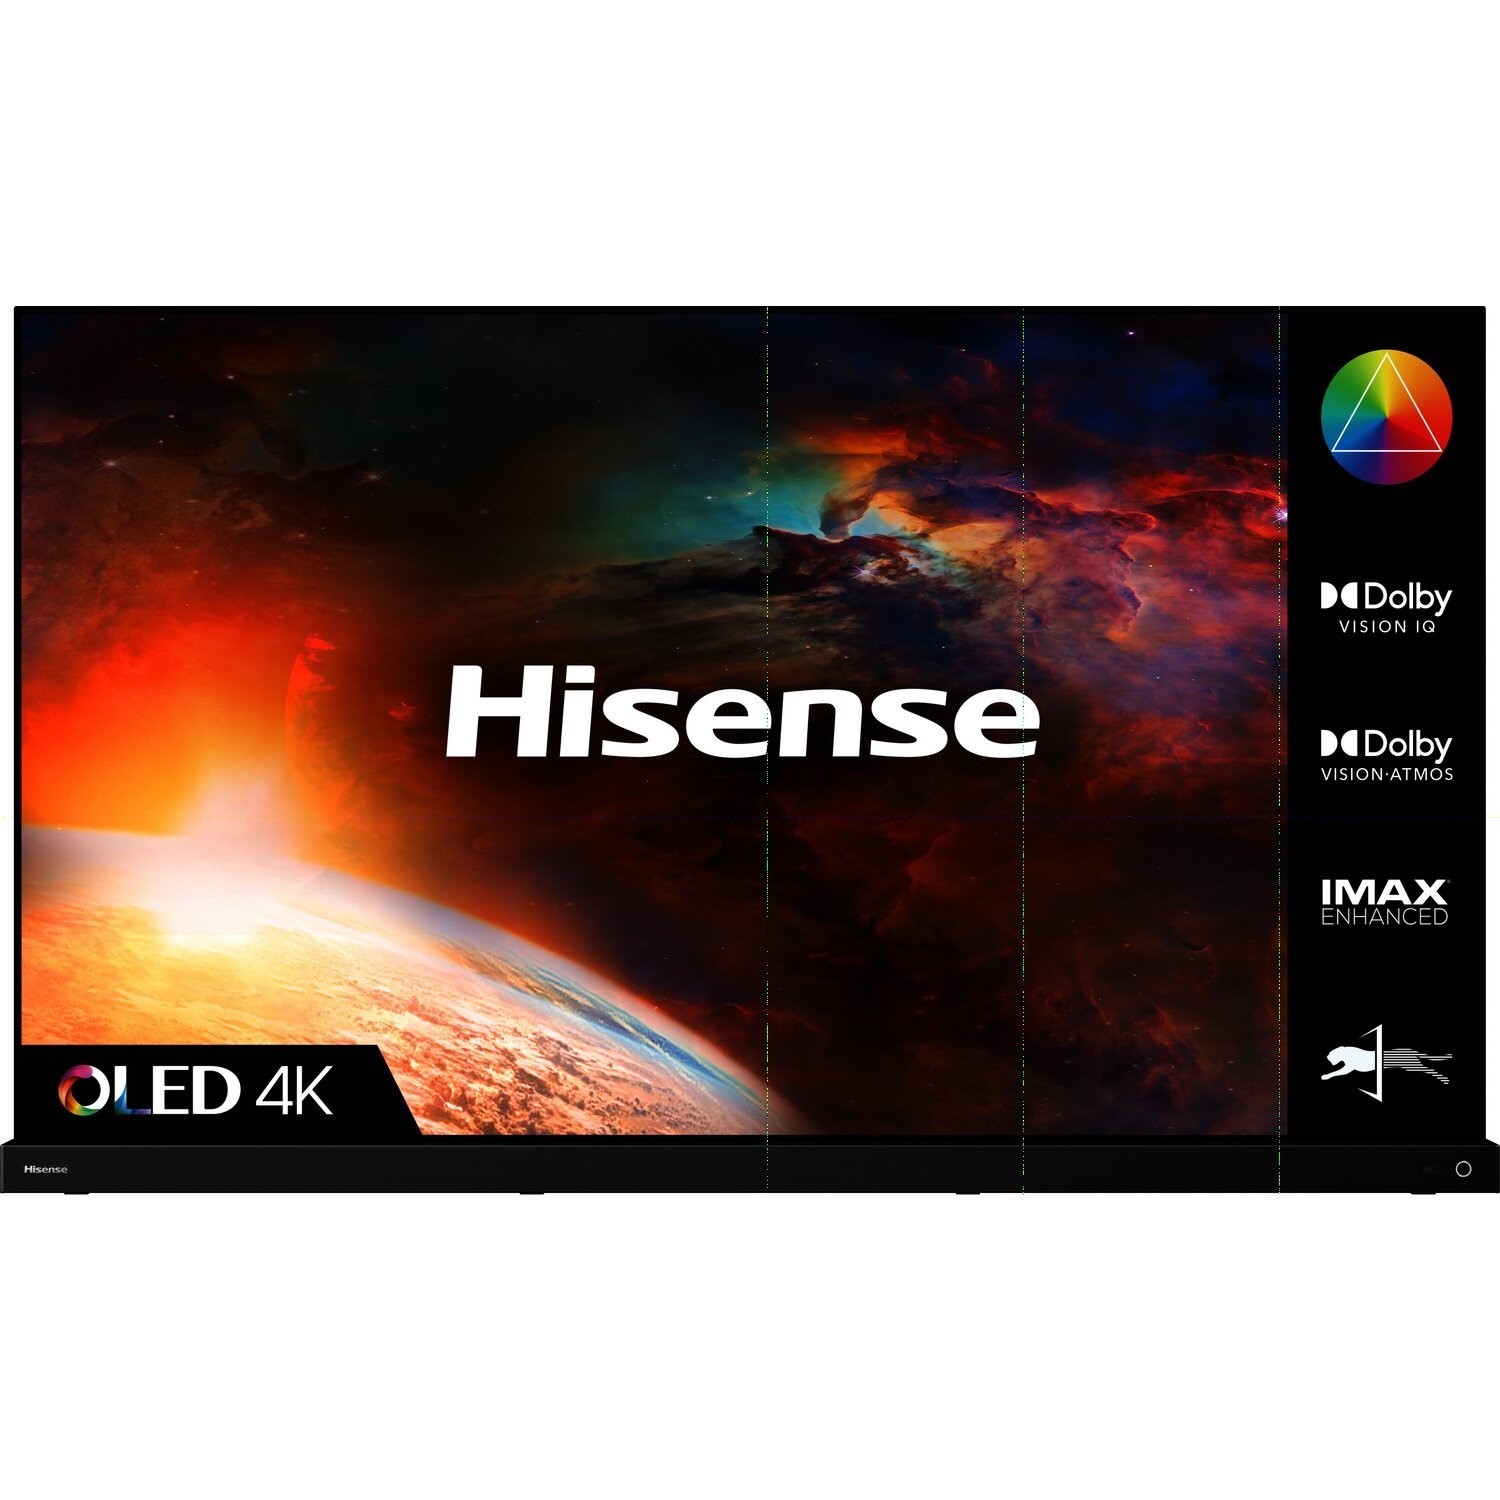 Hisense A9G 65 Inch OLED 4K Smart TV